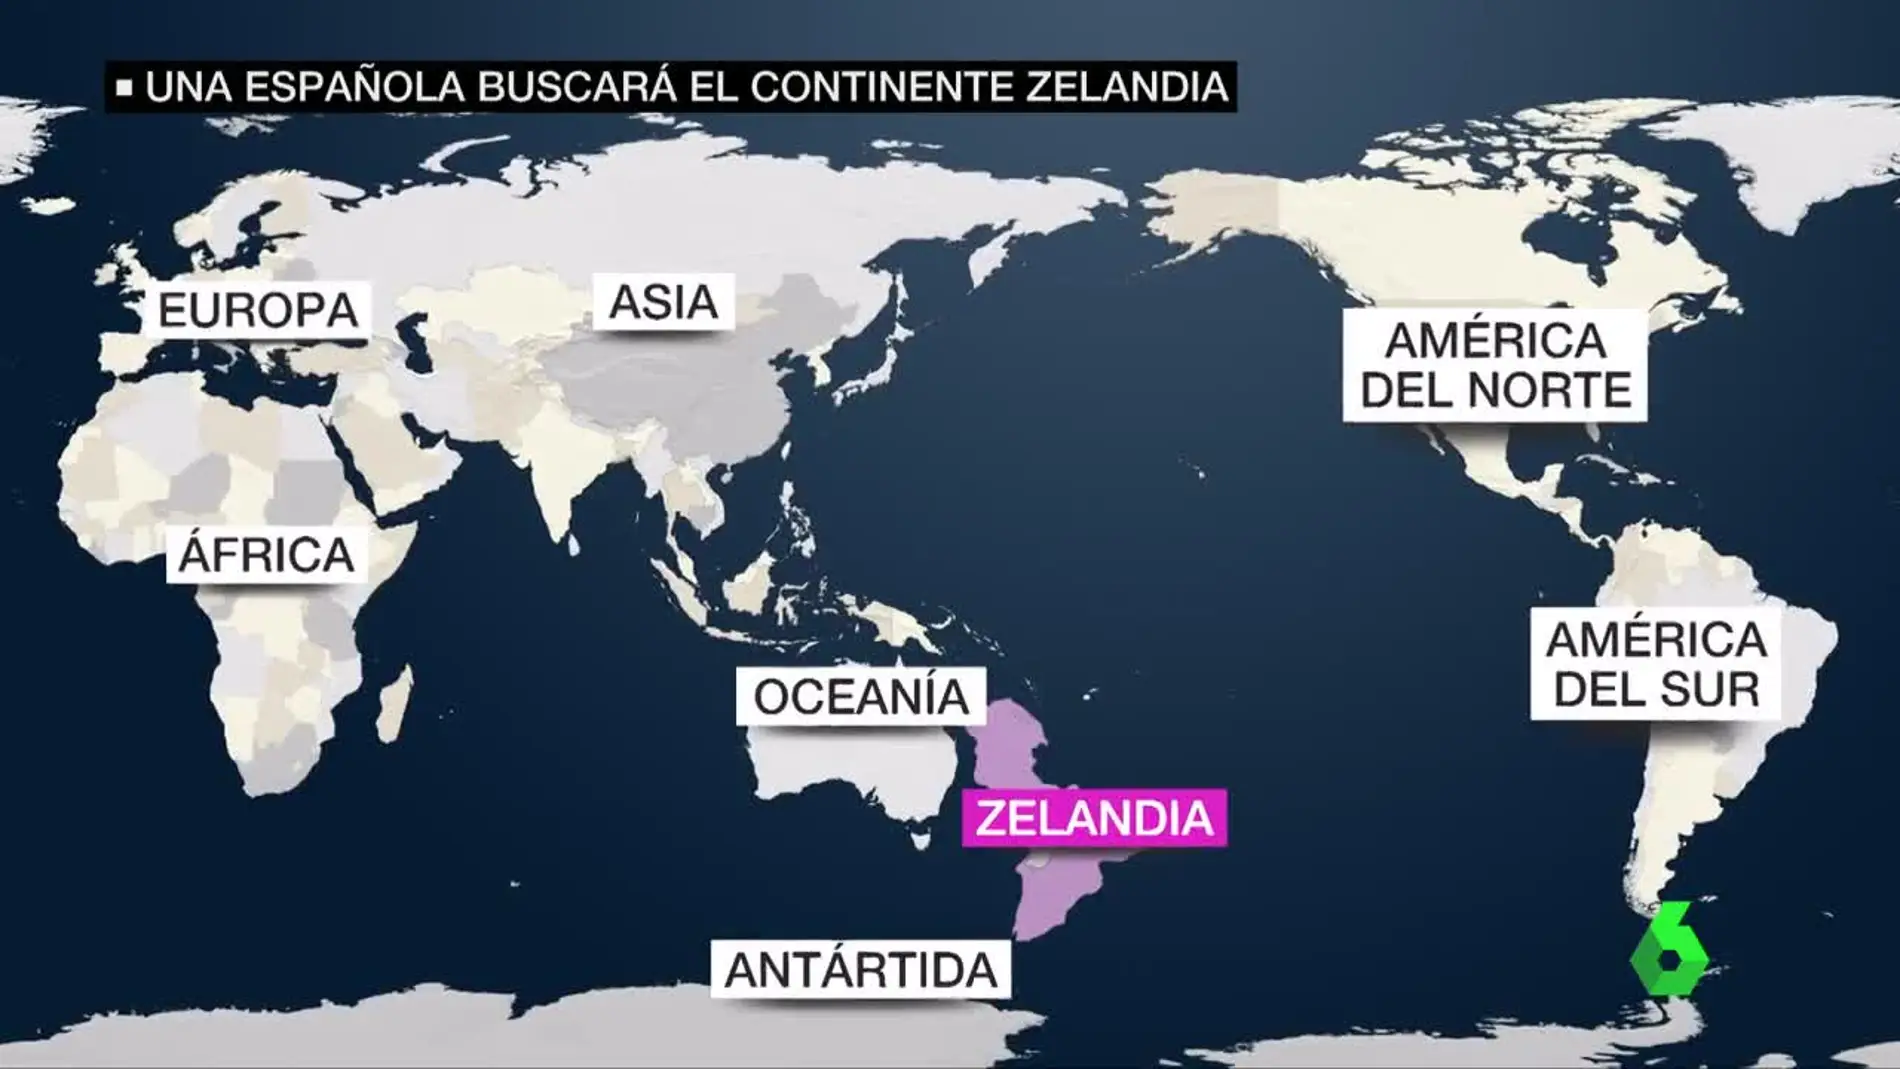 Zelandia sería el octavo continente del planeta